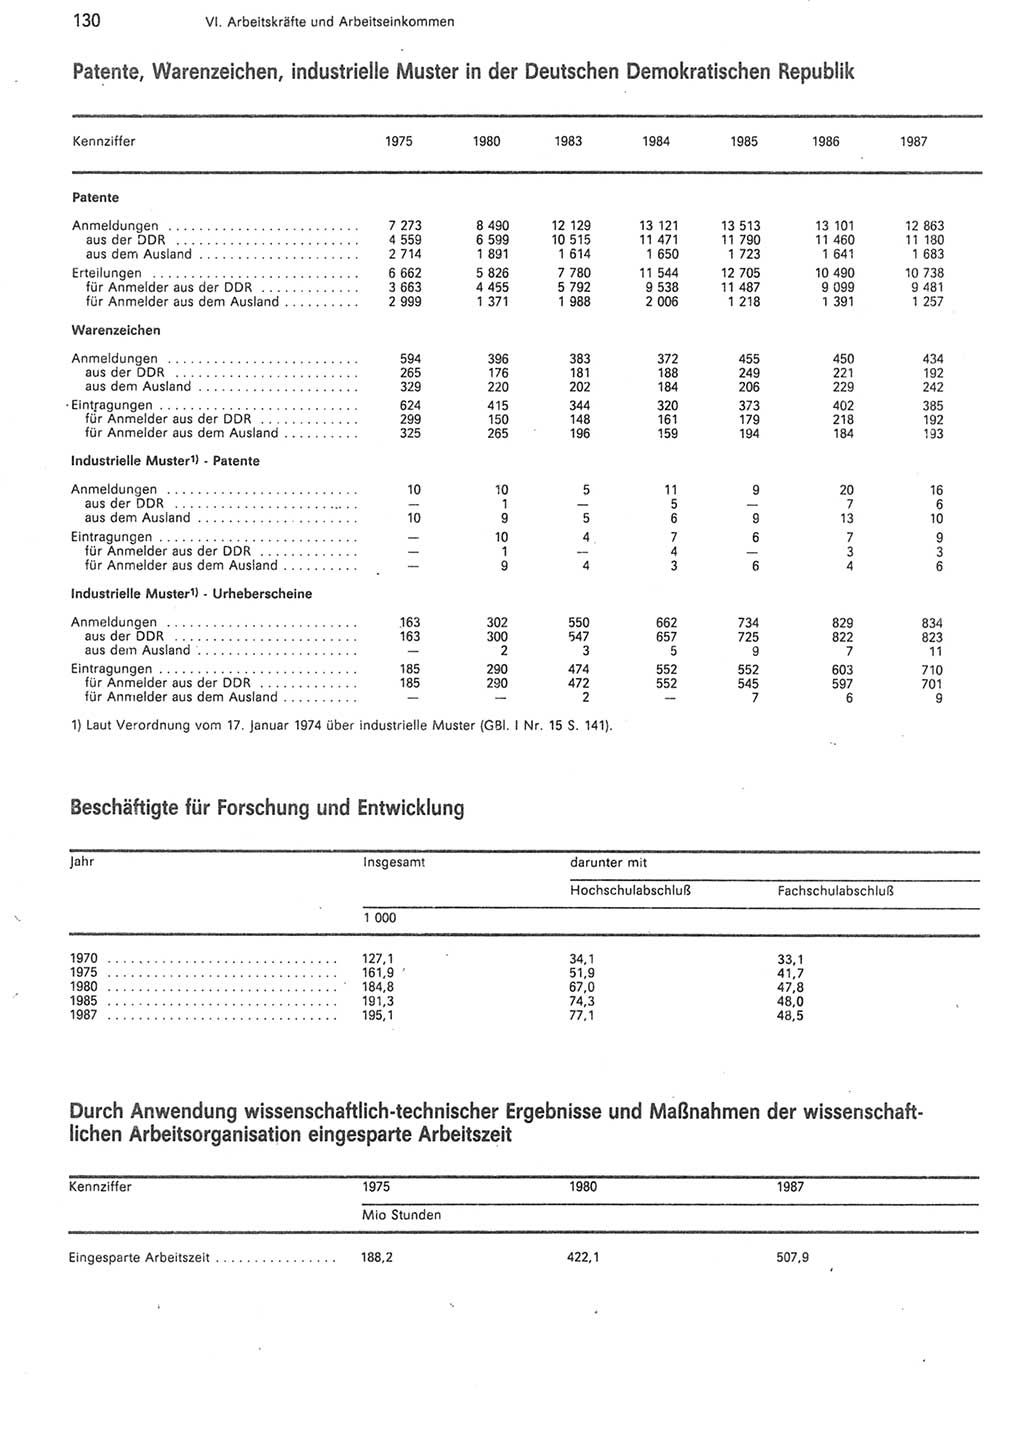 Statistisches Jahrbuch der Deutschen Demokratischen Republik (DDR) 1988, Seite 130 (Stat. Jb. DDR 1988, S. 130)